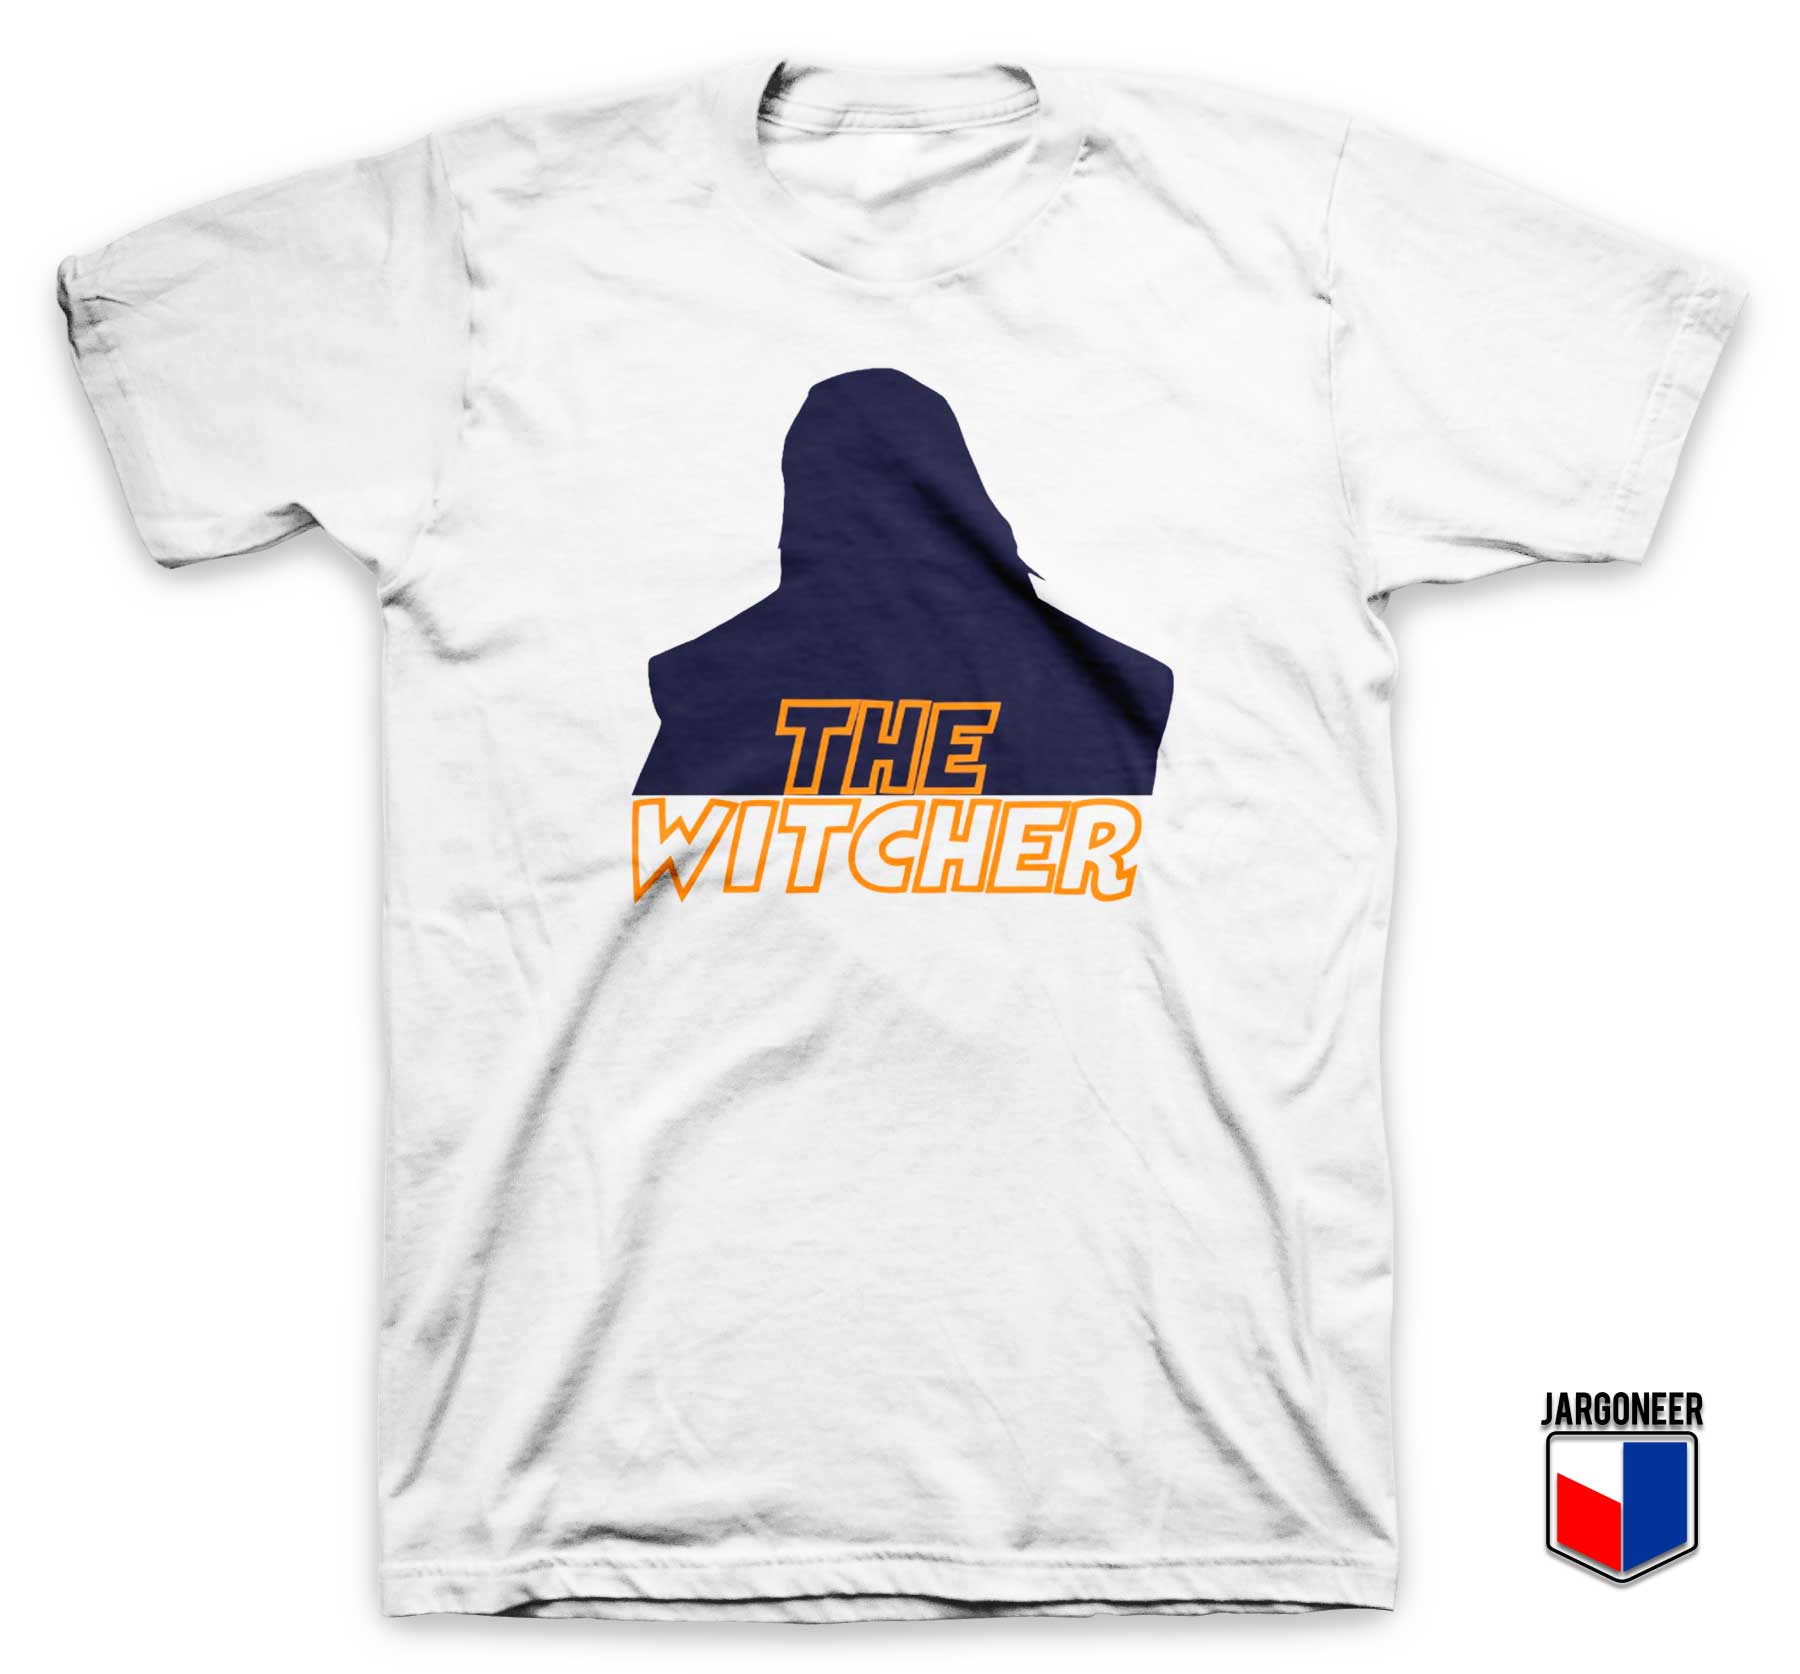 The Witcher Season 2 T Shirt - Shop Unique Graphic Cool Shirt Designs